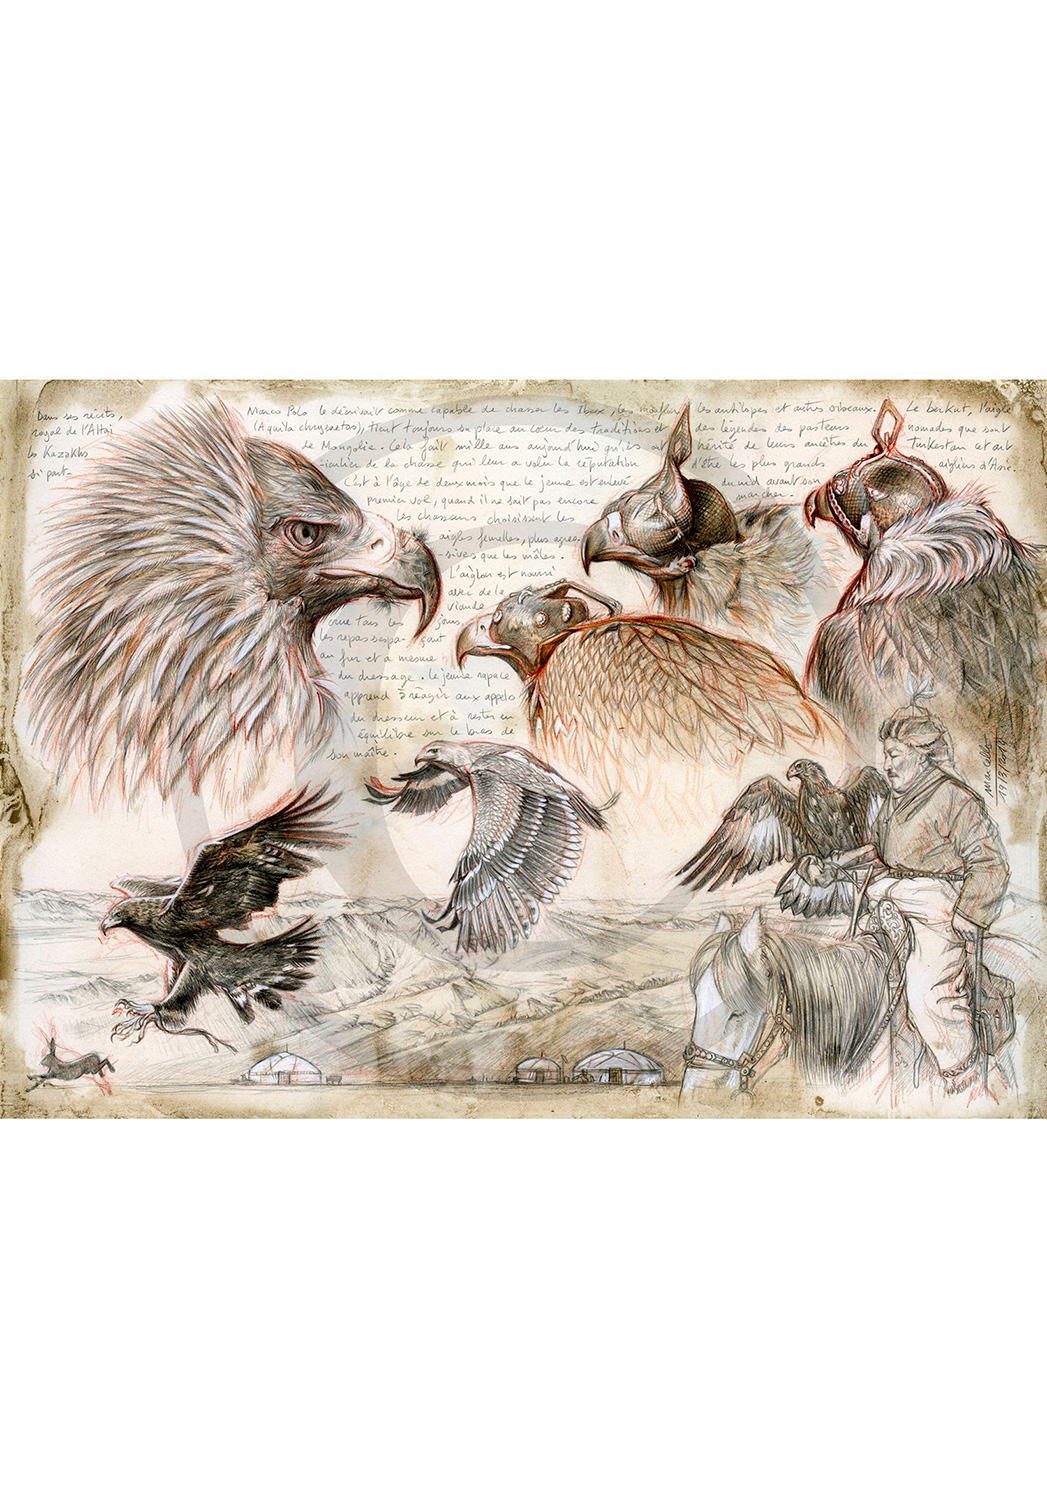 Marcello-art: Wish Card 256 - Altai Kazakh eagle hunter